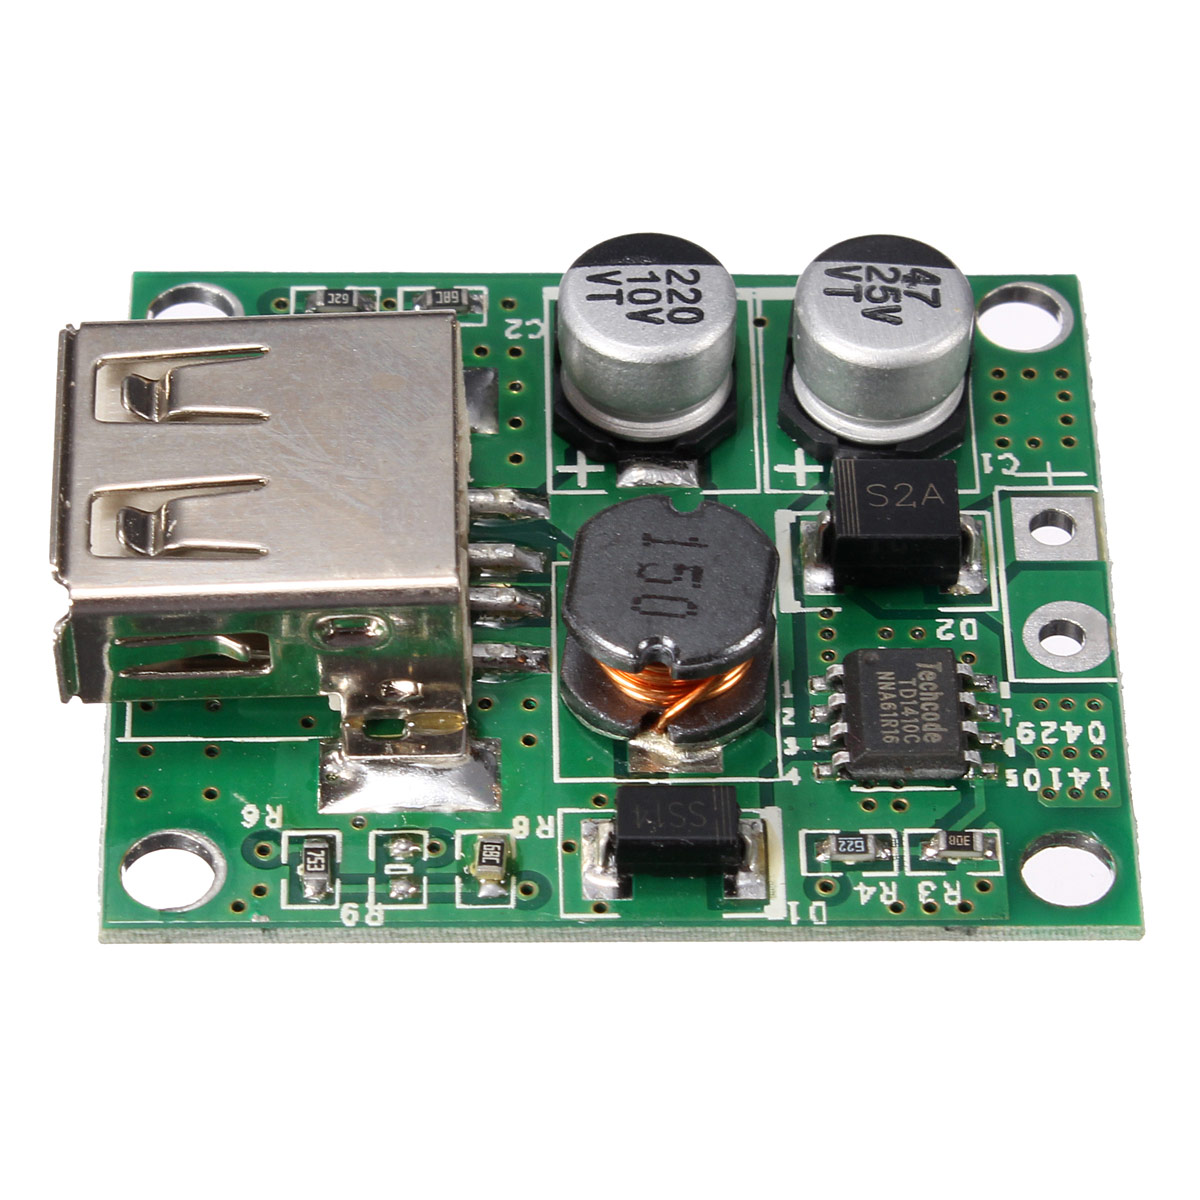 20pcs-5V-2A-Solar-Panel-Power-Bank-USB-Charge-Voltage-Controller-Regulator-Module-6V-20V-Input-For-U-1369836